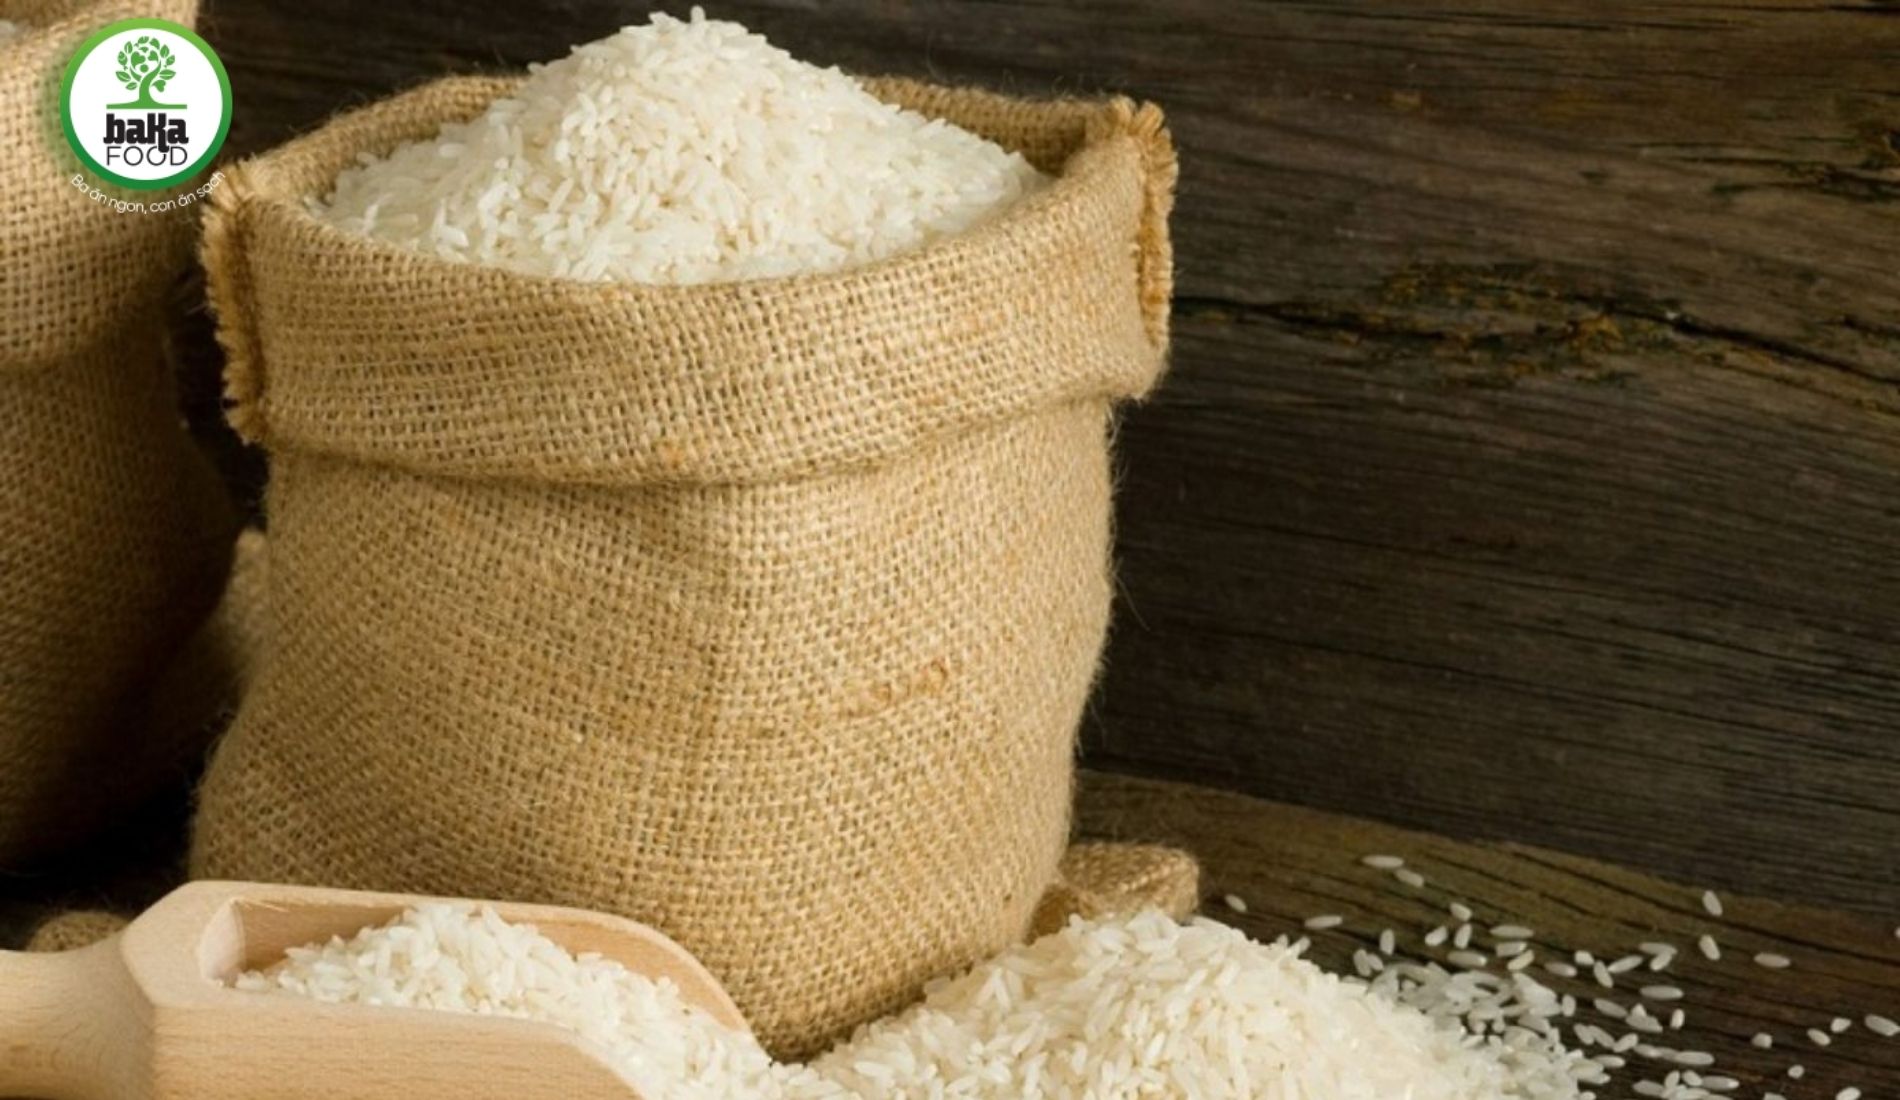 Phương pháp lưu giữ đối với những loại gạo ít sử dụng hoặc lượng gạo không nhiều. Ví dụ như gạo nếp, gạo lứt,... Tốt nhất chính là đựng trong các túi vải hoặc hộp kín.